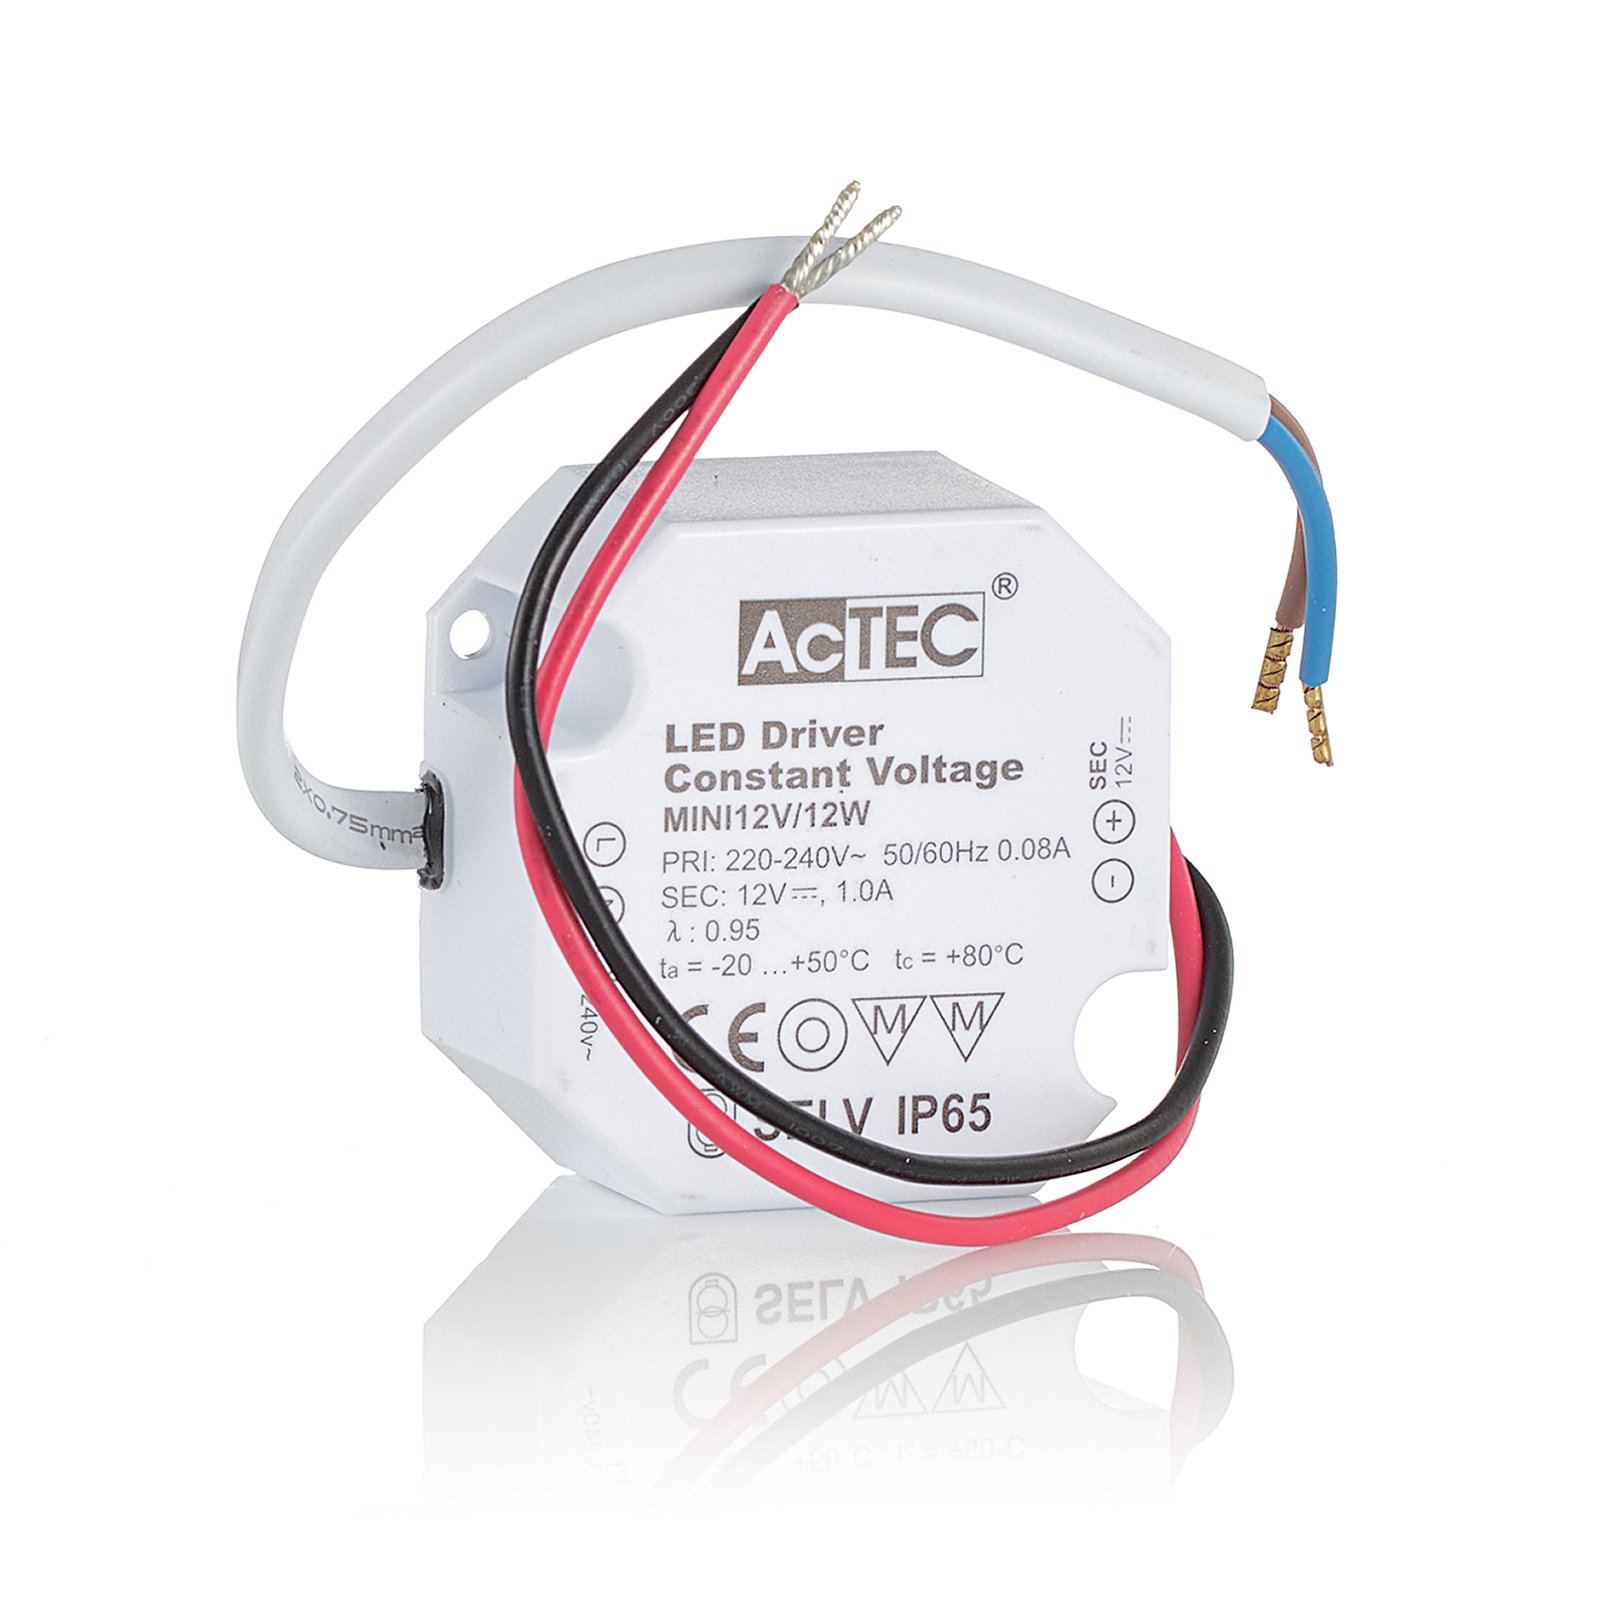 AcTEC Mini LED driver CV 12 V, 12W, IP65